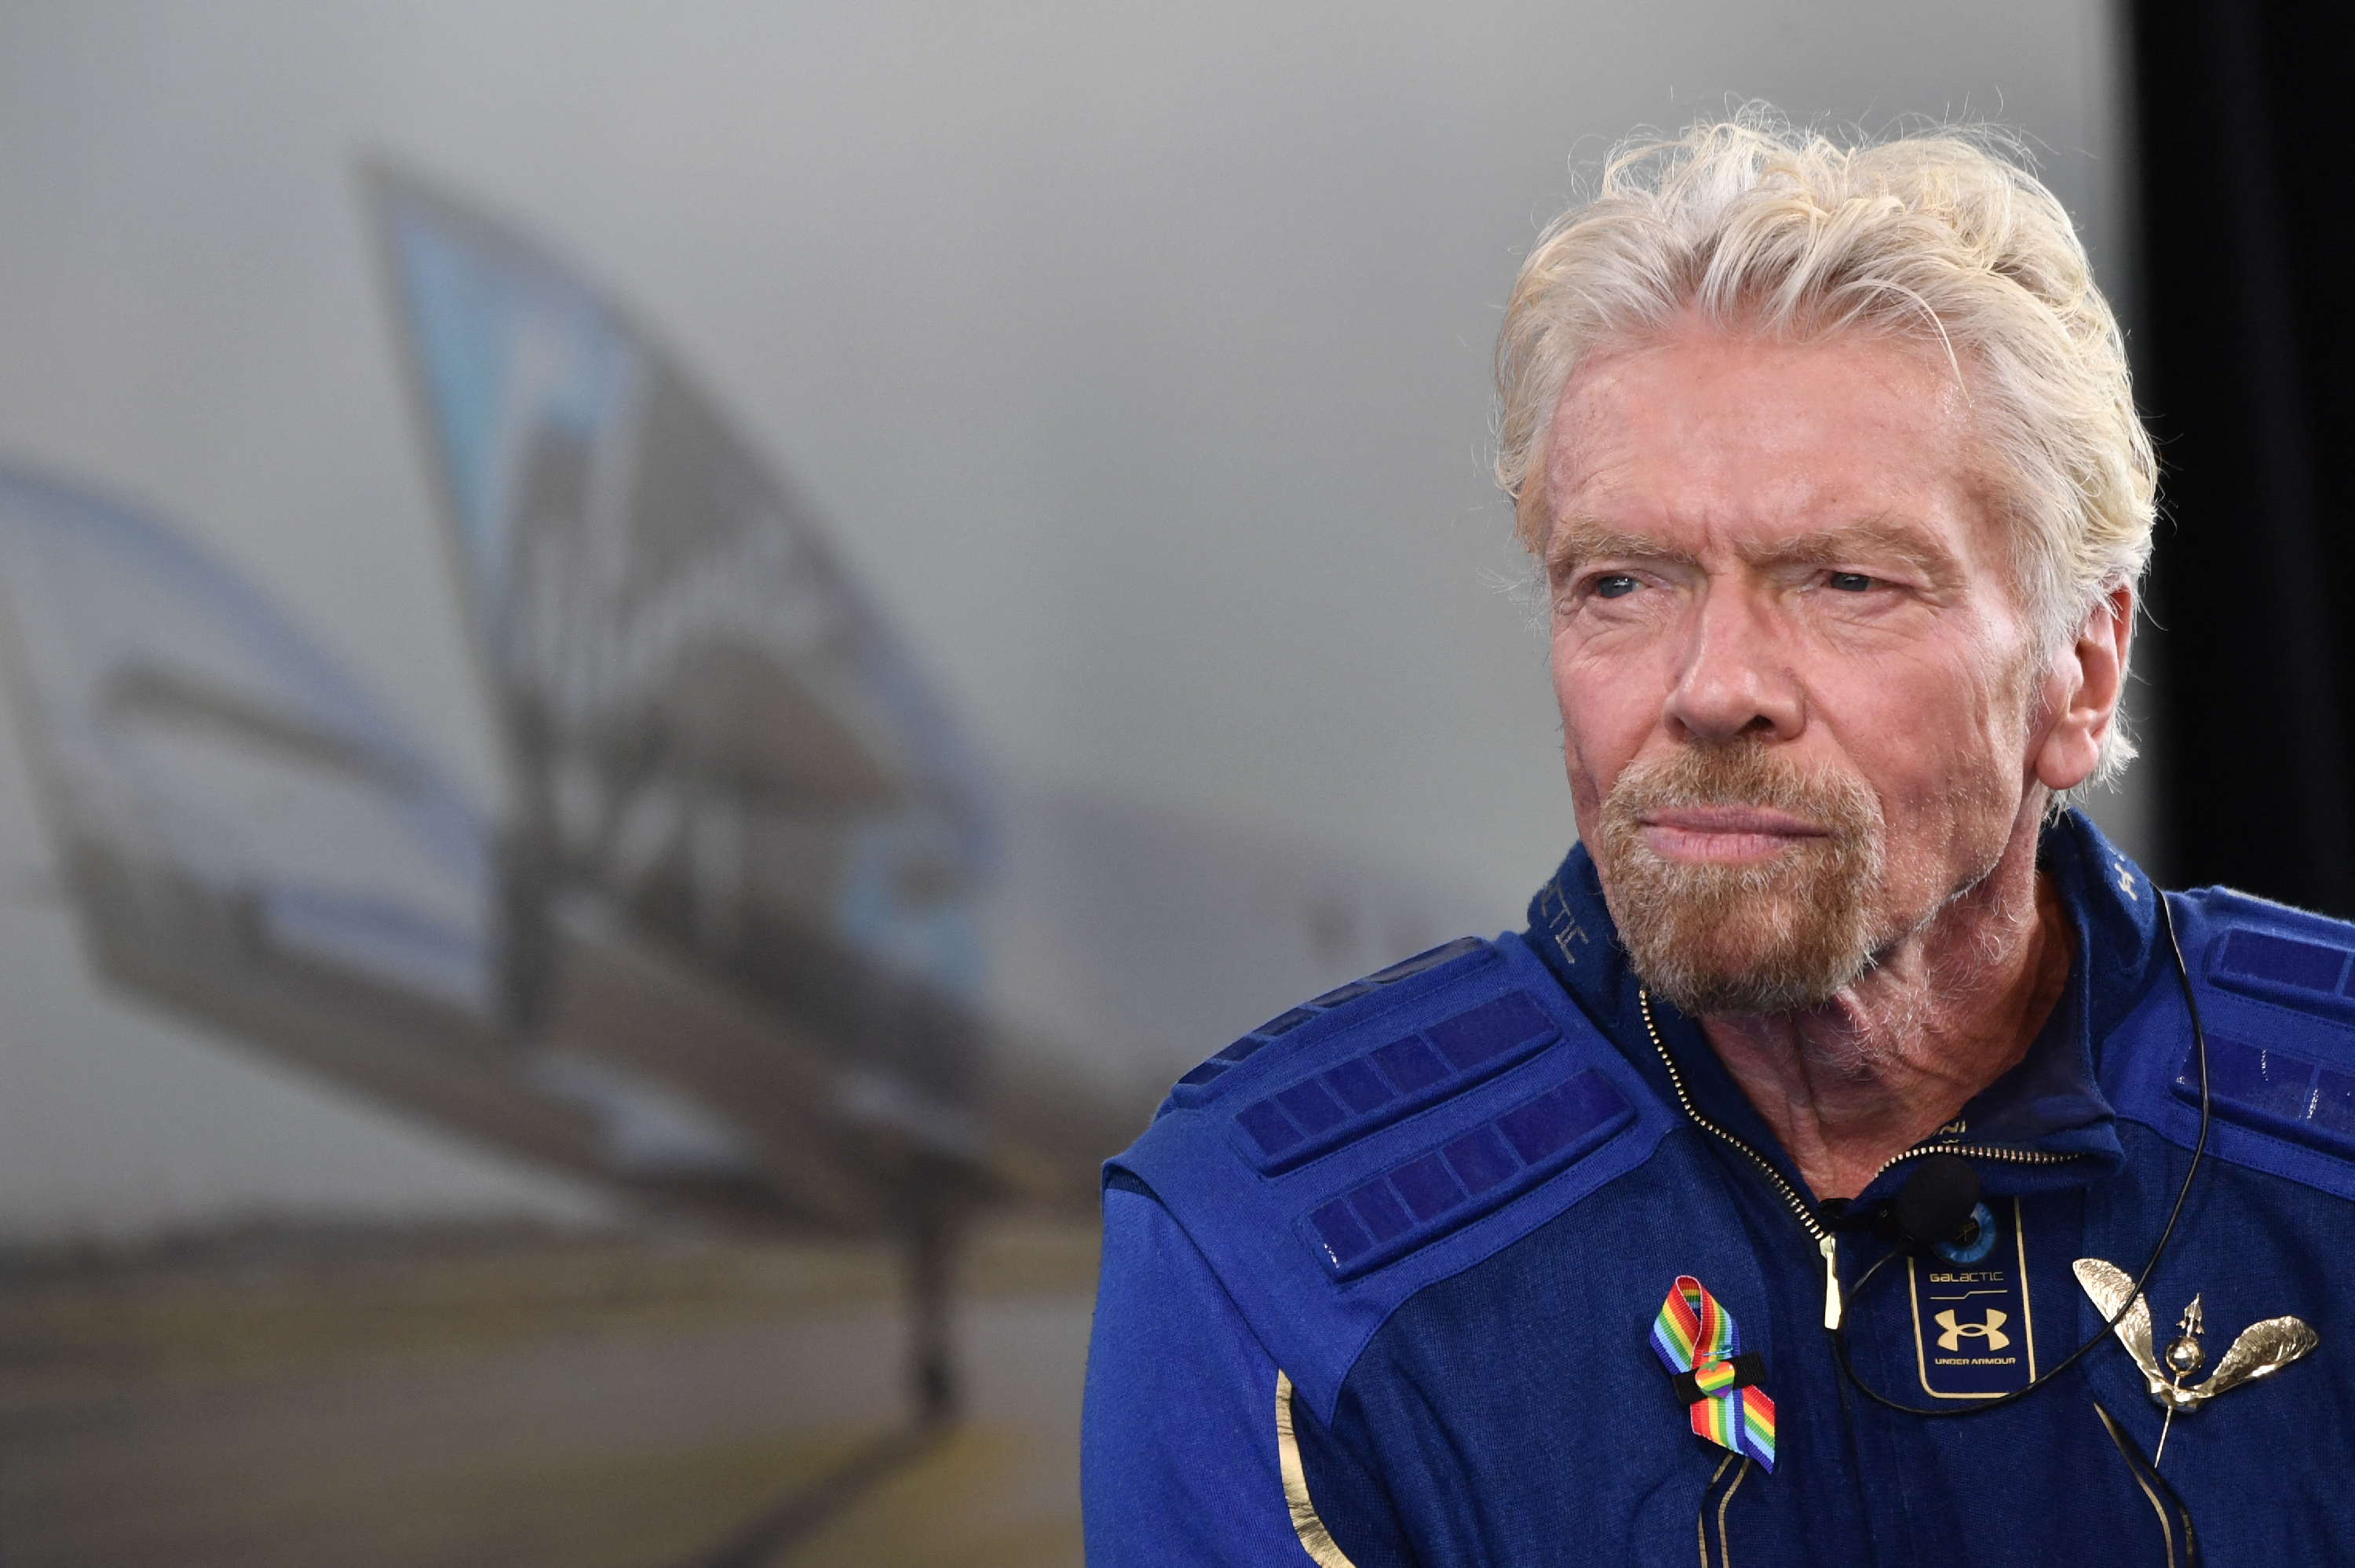 Ingyen űrutazást ígér a milliárdos Richard Branson